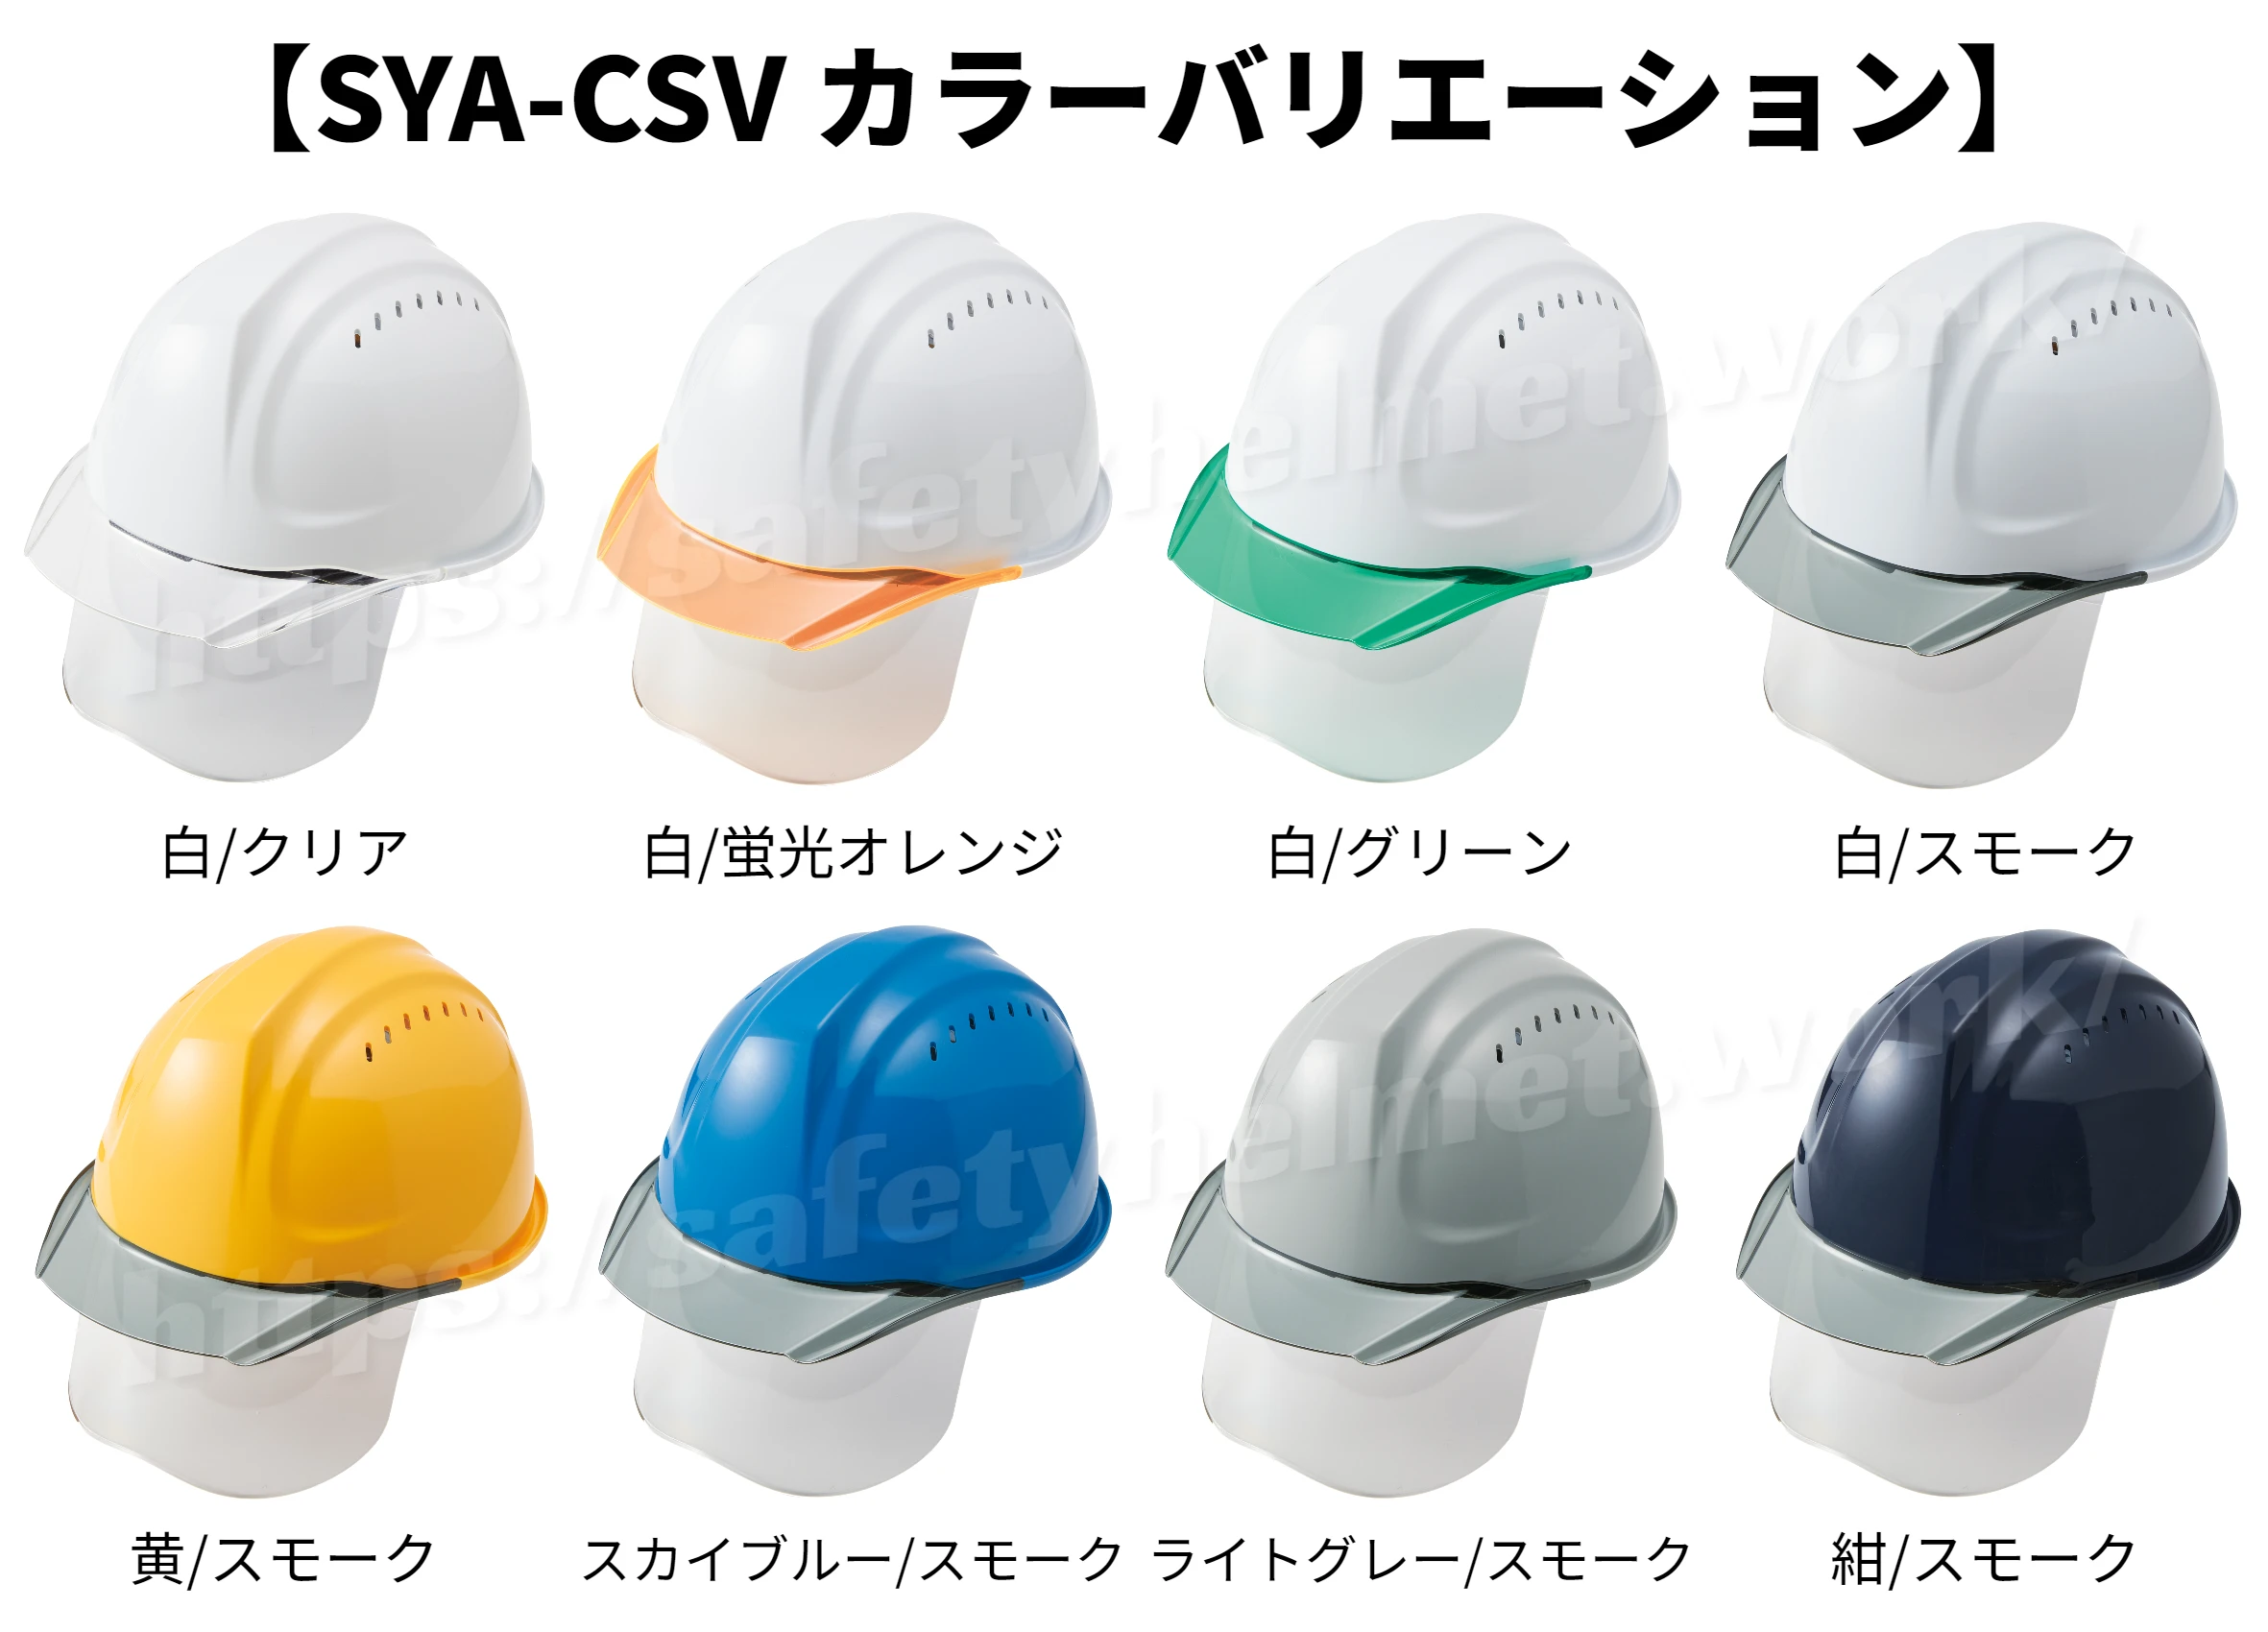 DIC SYA-CSVM エアロメッシュ シールド面付き 涼しい 洗える ヘルメット（通気孔付き）